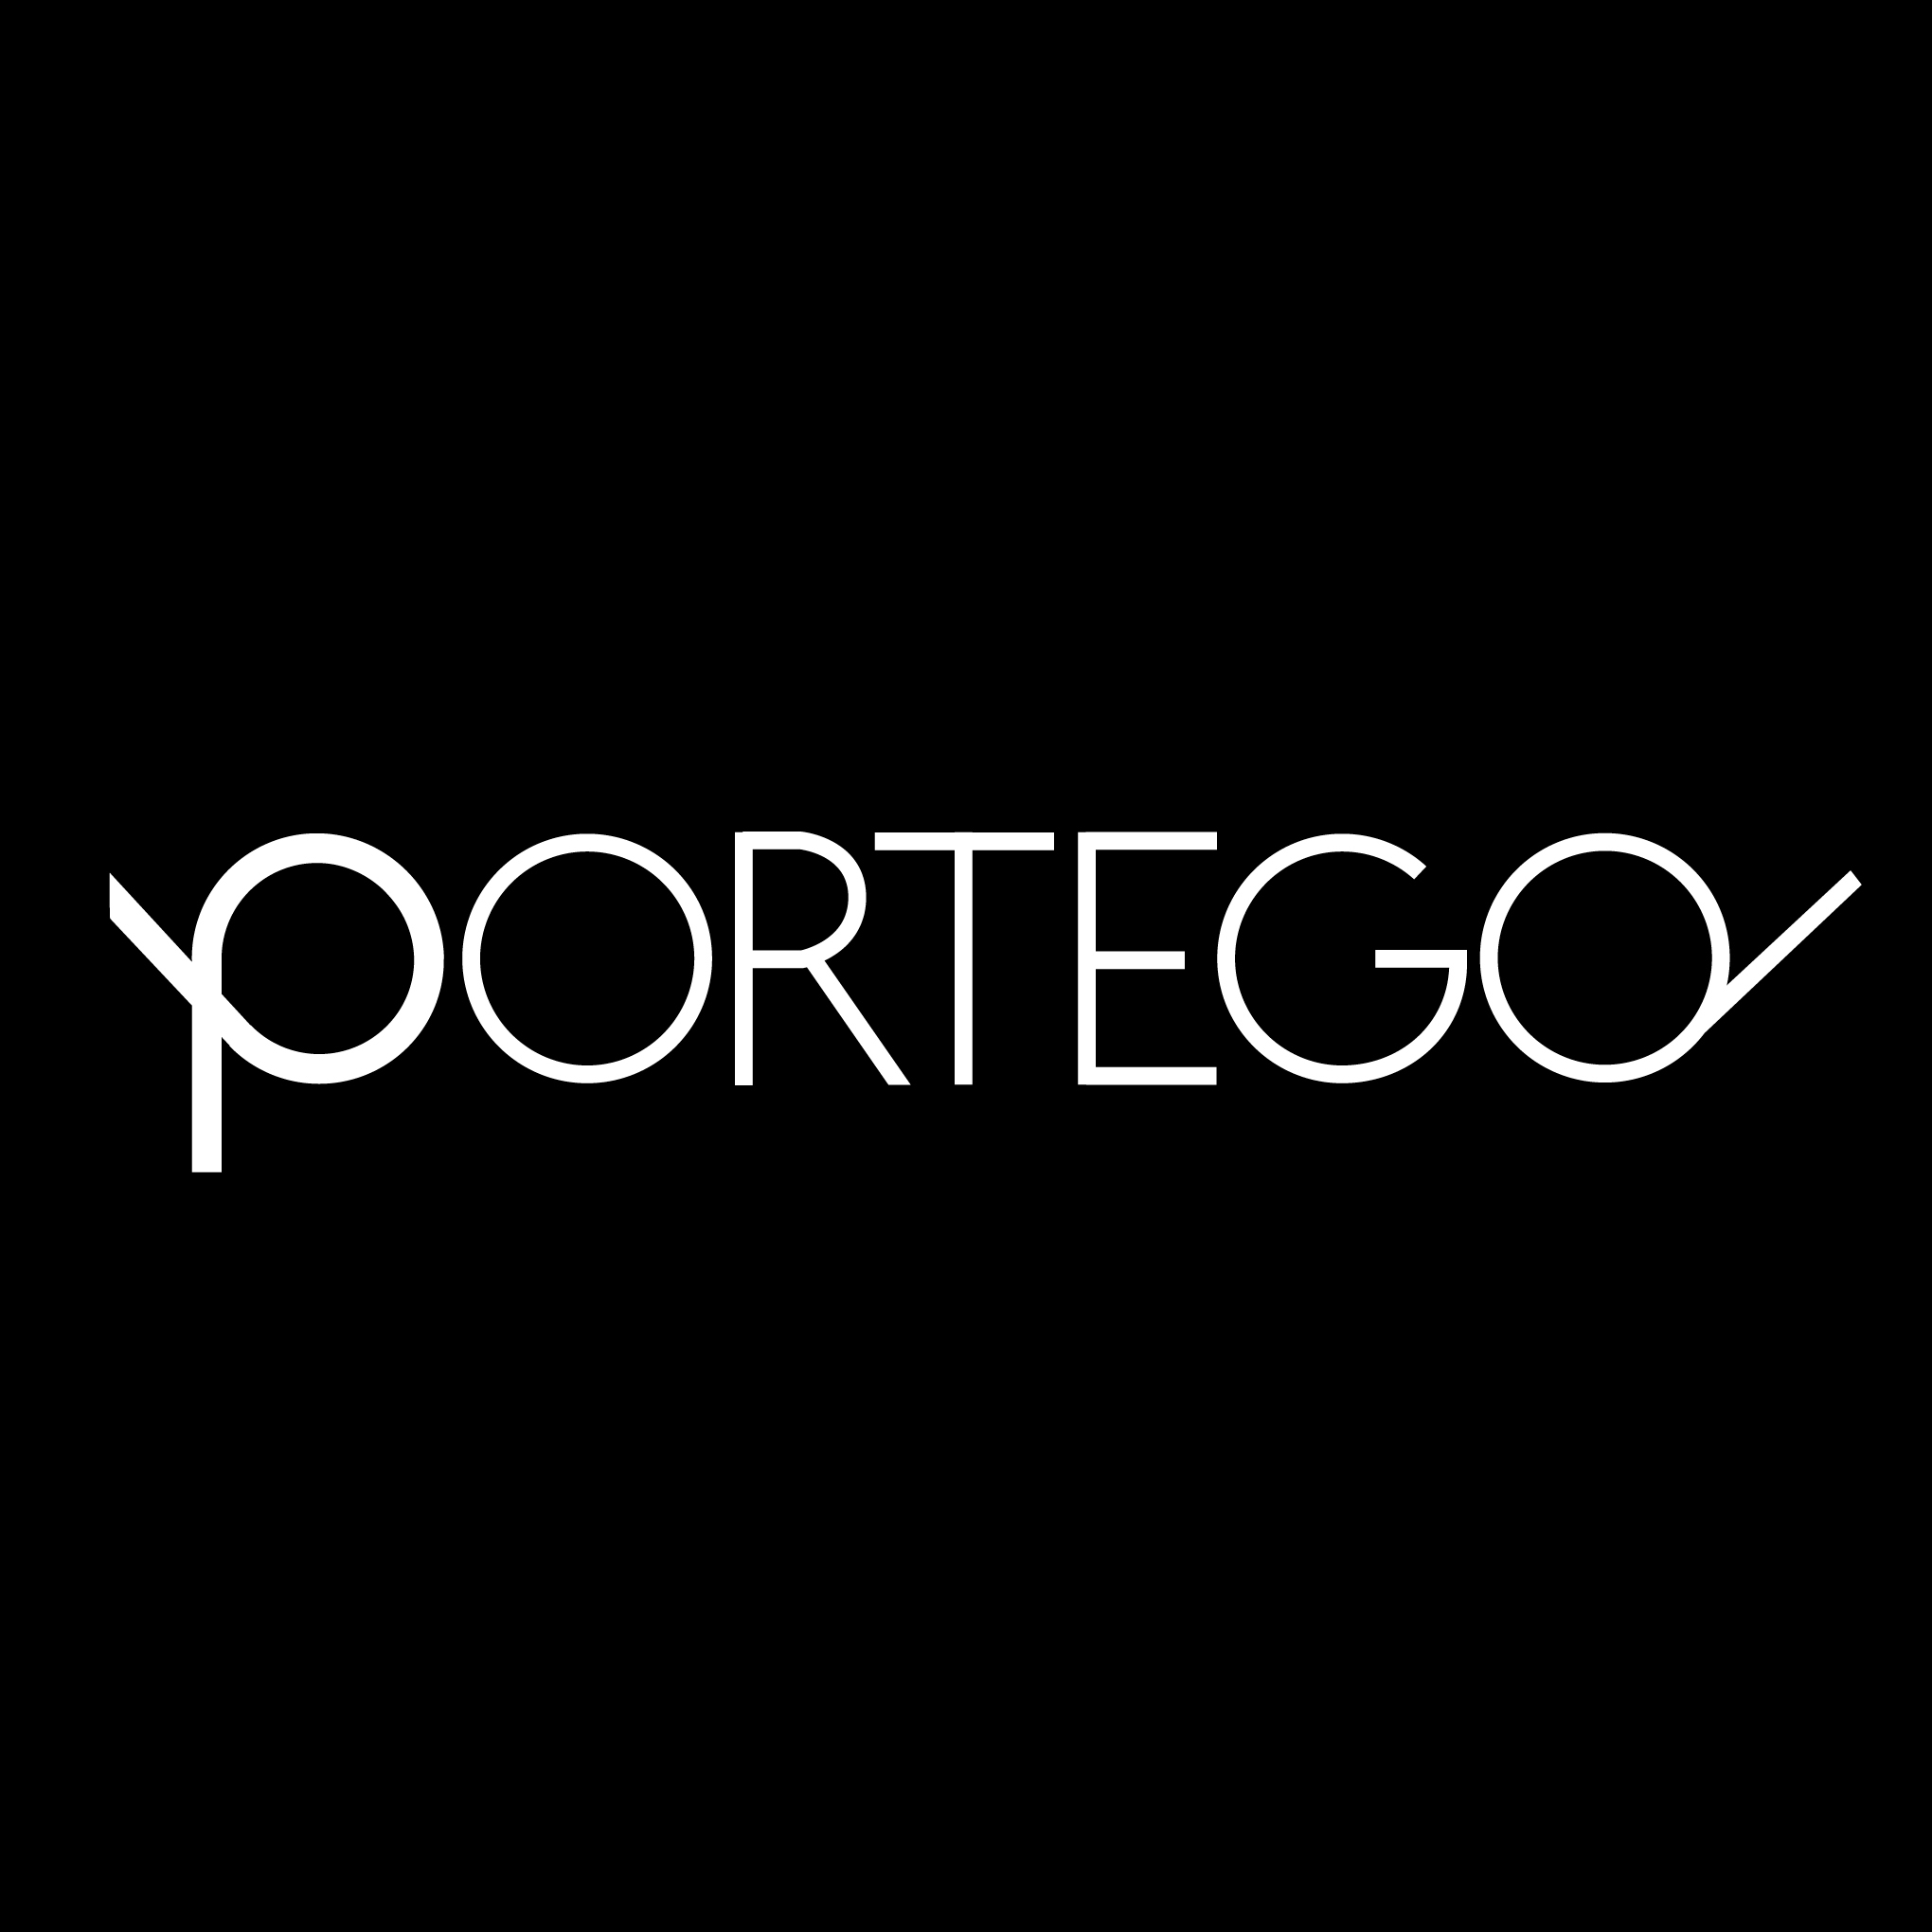 PORTEGO -